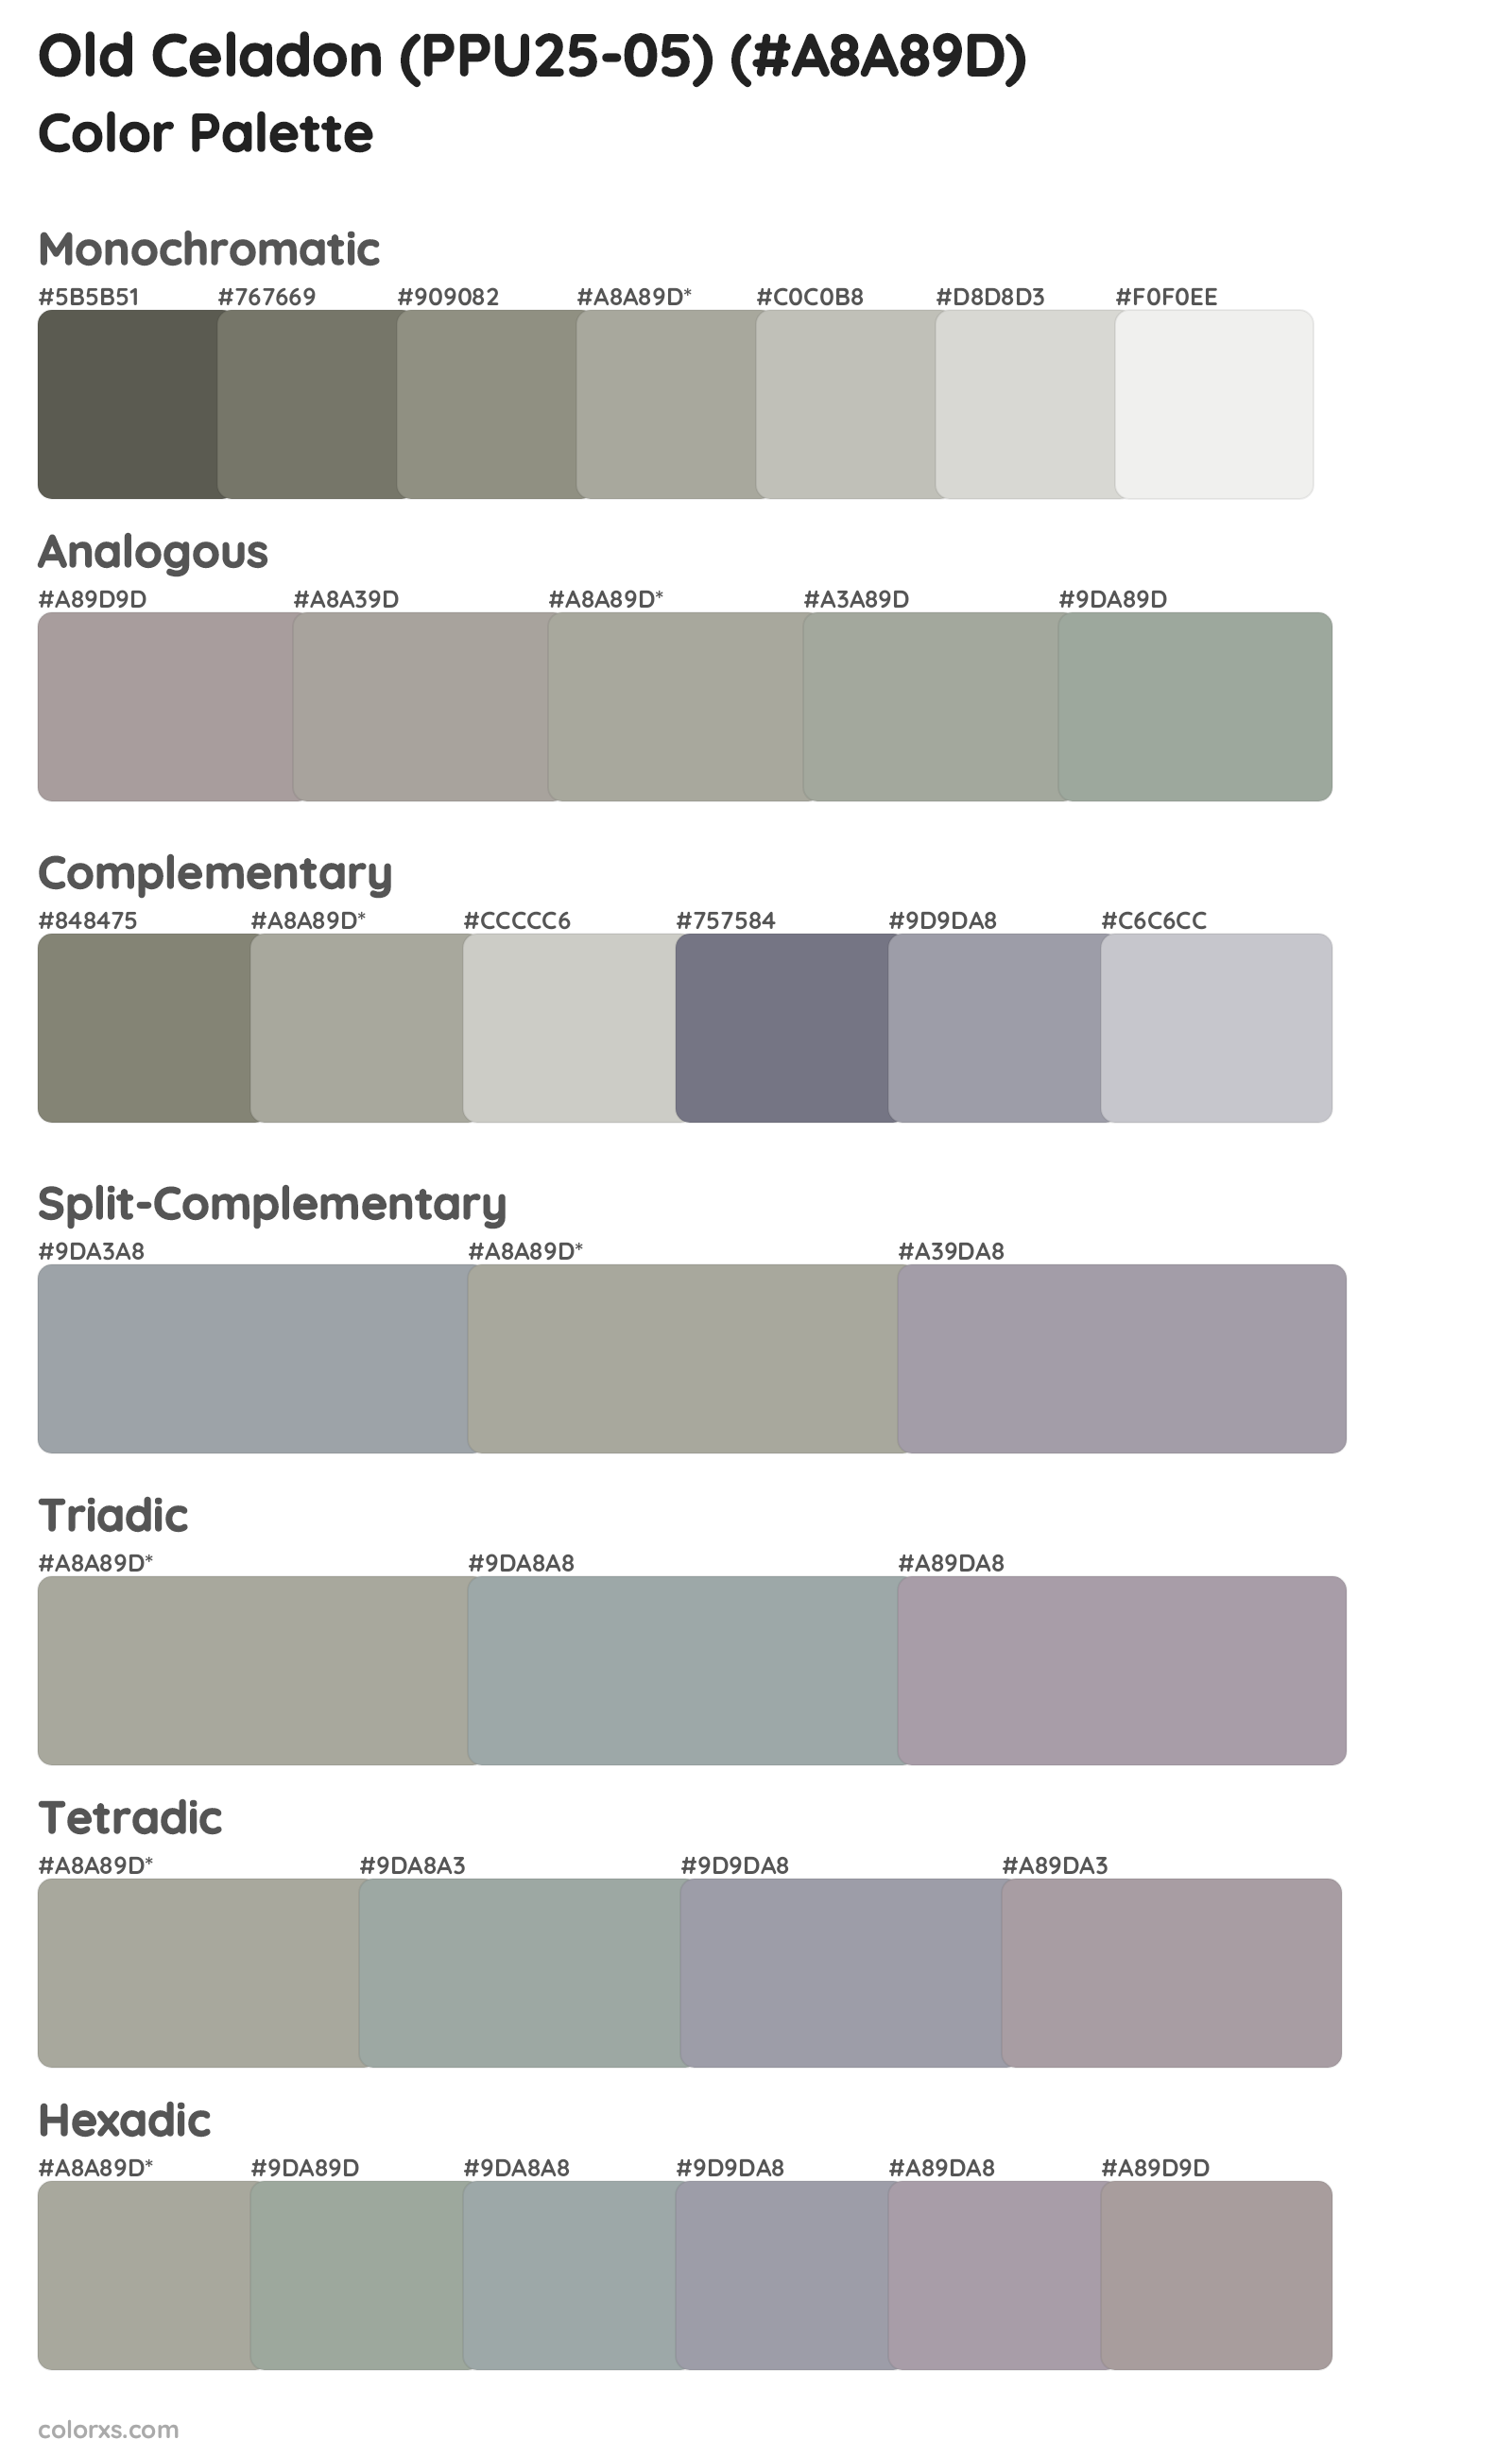 Old Celadon (PPU25-05) Color Scheme Palettes